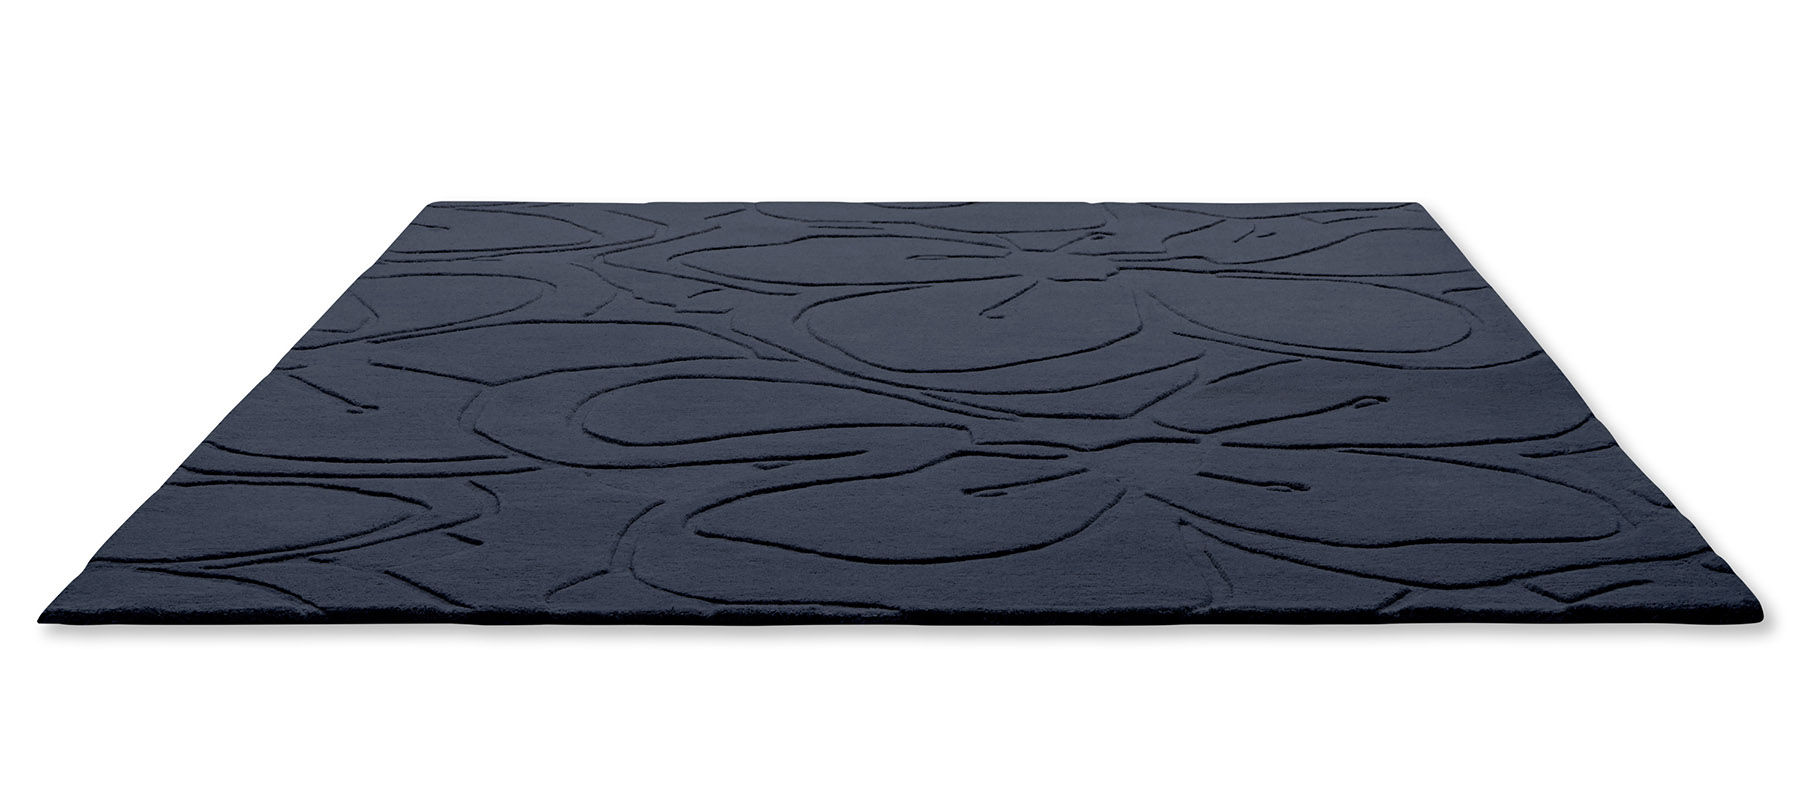 Romantic Magnolia Blue Designer Rug ☞ Size: 4' 7" x 6' 7" (140 x 200 cm)